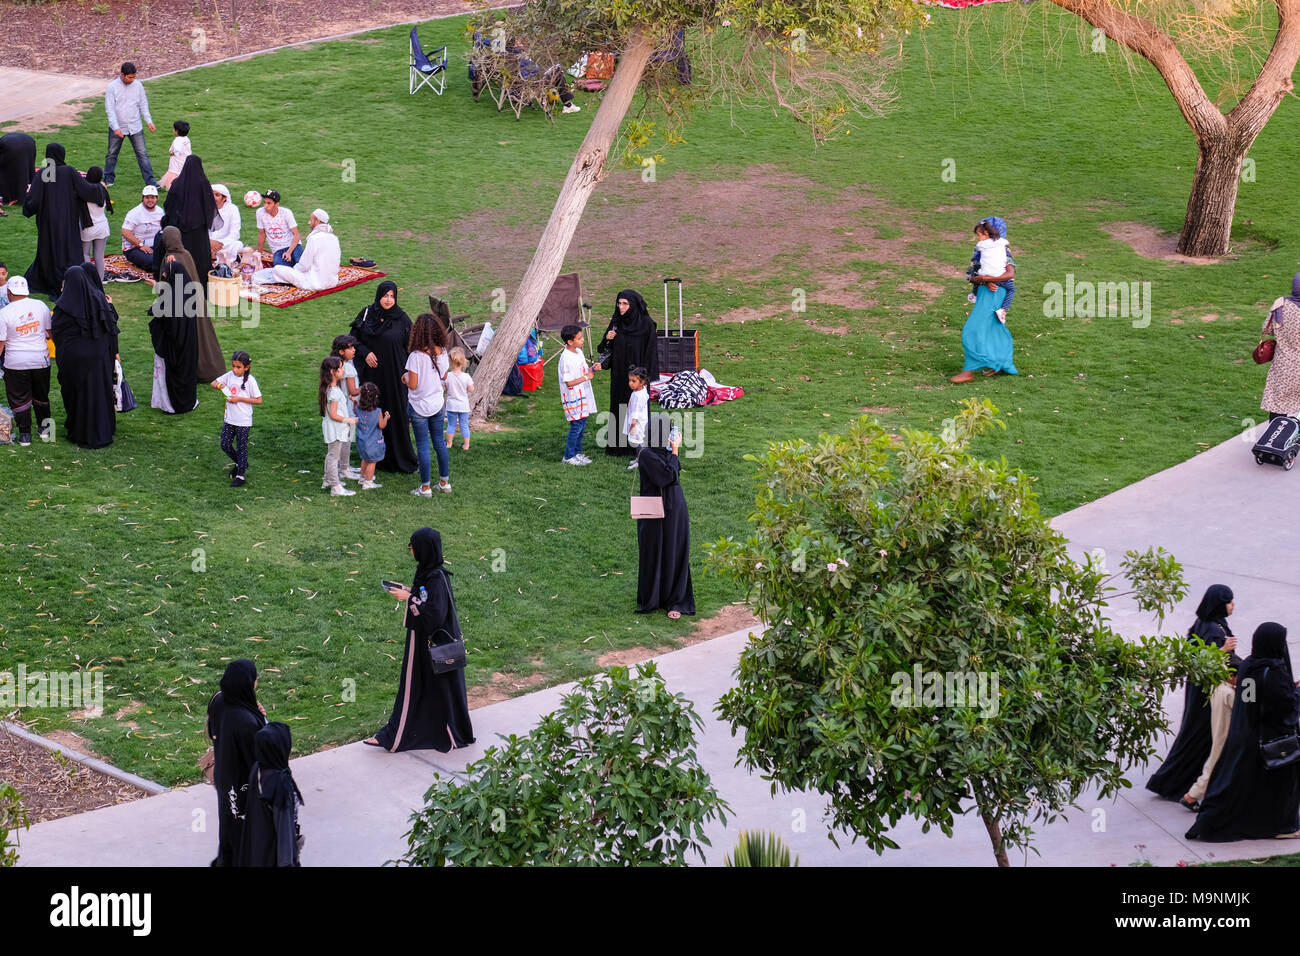 Outdoor Familie Picknick, muslimisch-arabischen Familien genießen outdoor Aktivitäten bei Umm Al Emarat Park, Abu Dhabi, VAE. Stockfoto